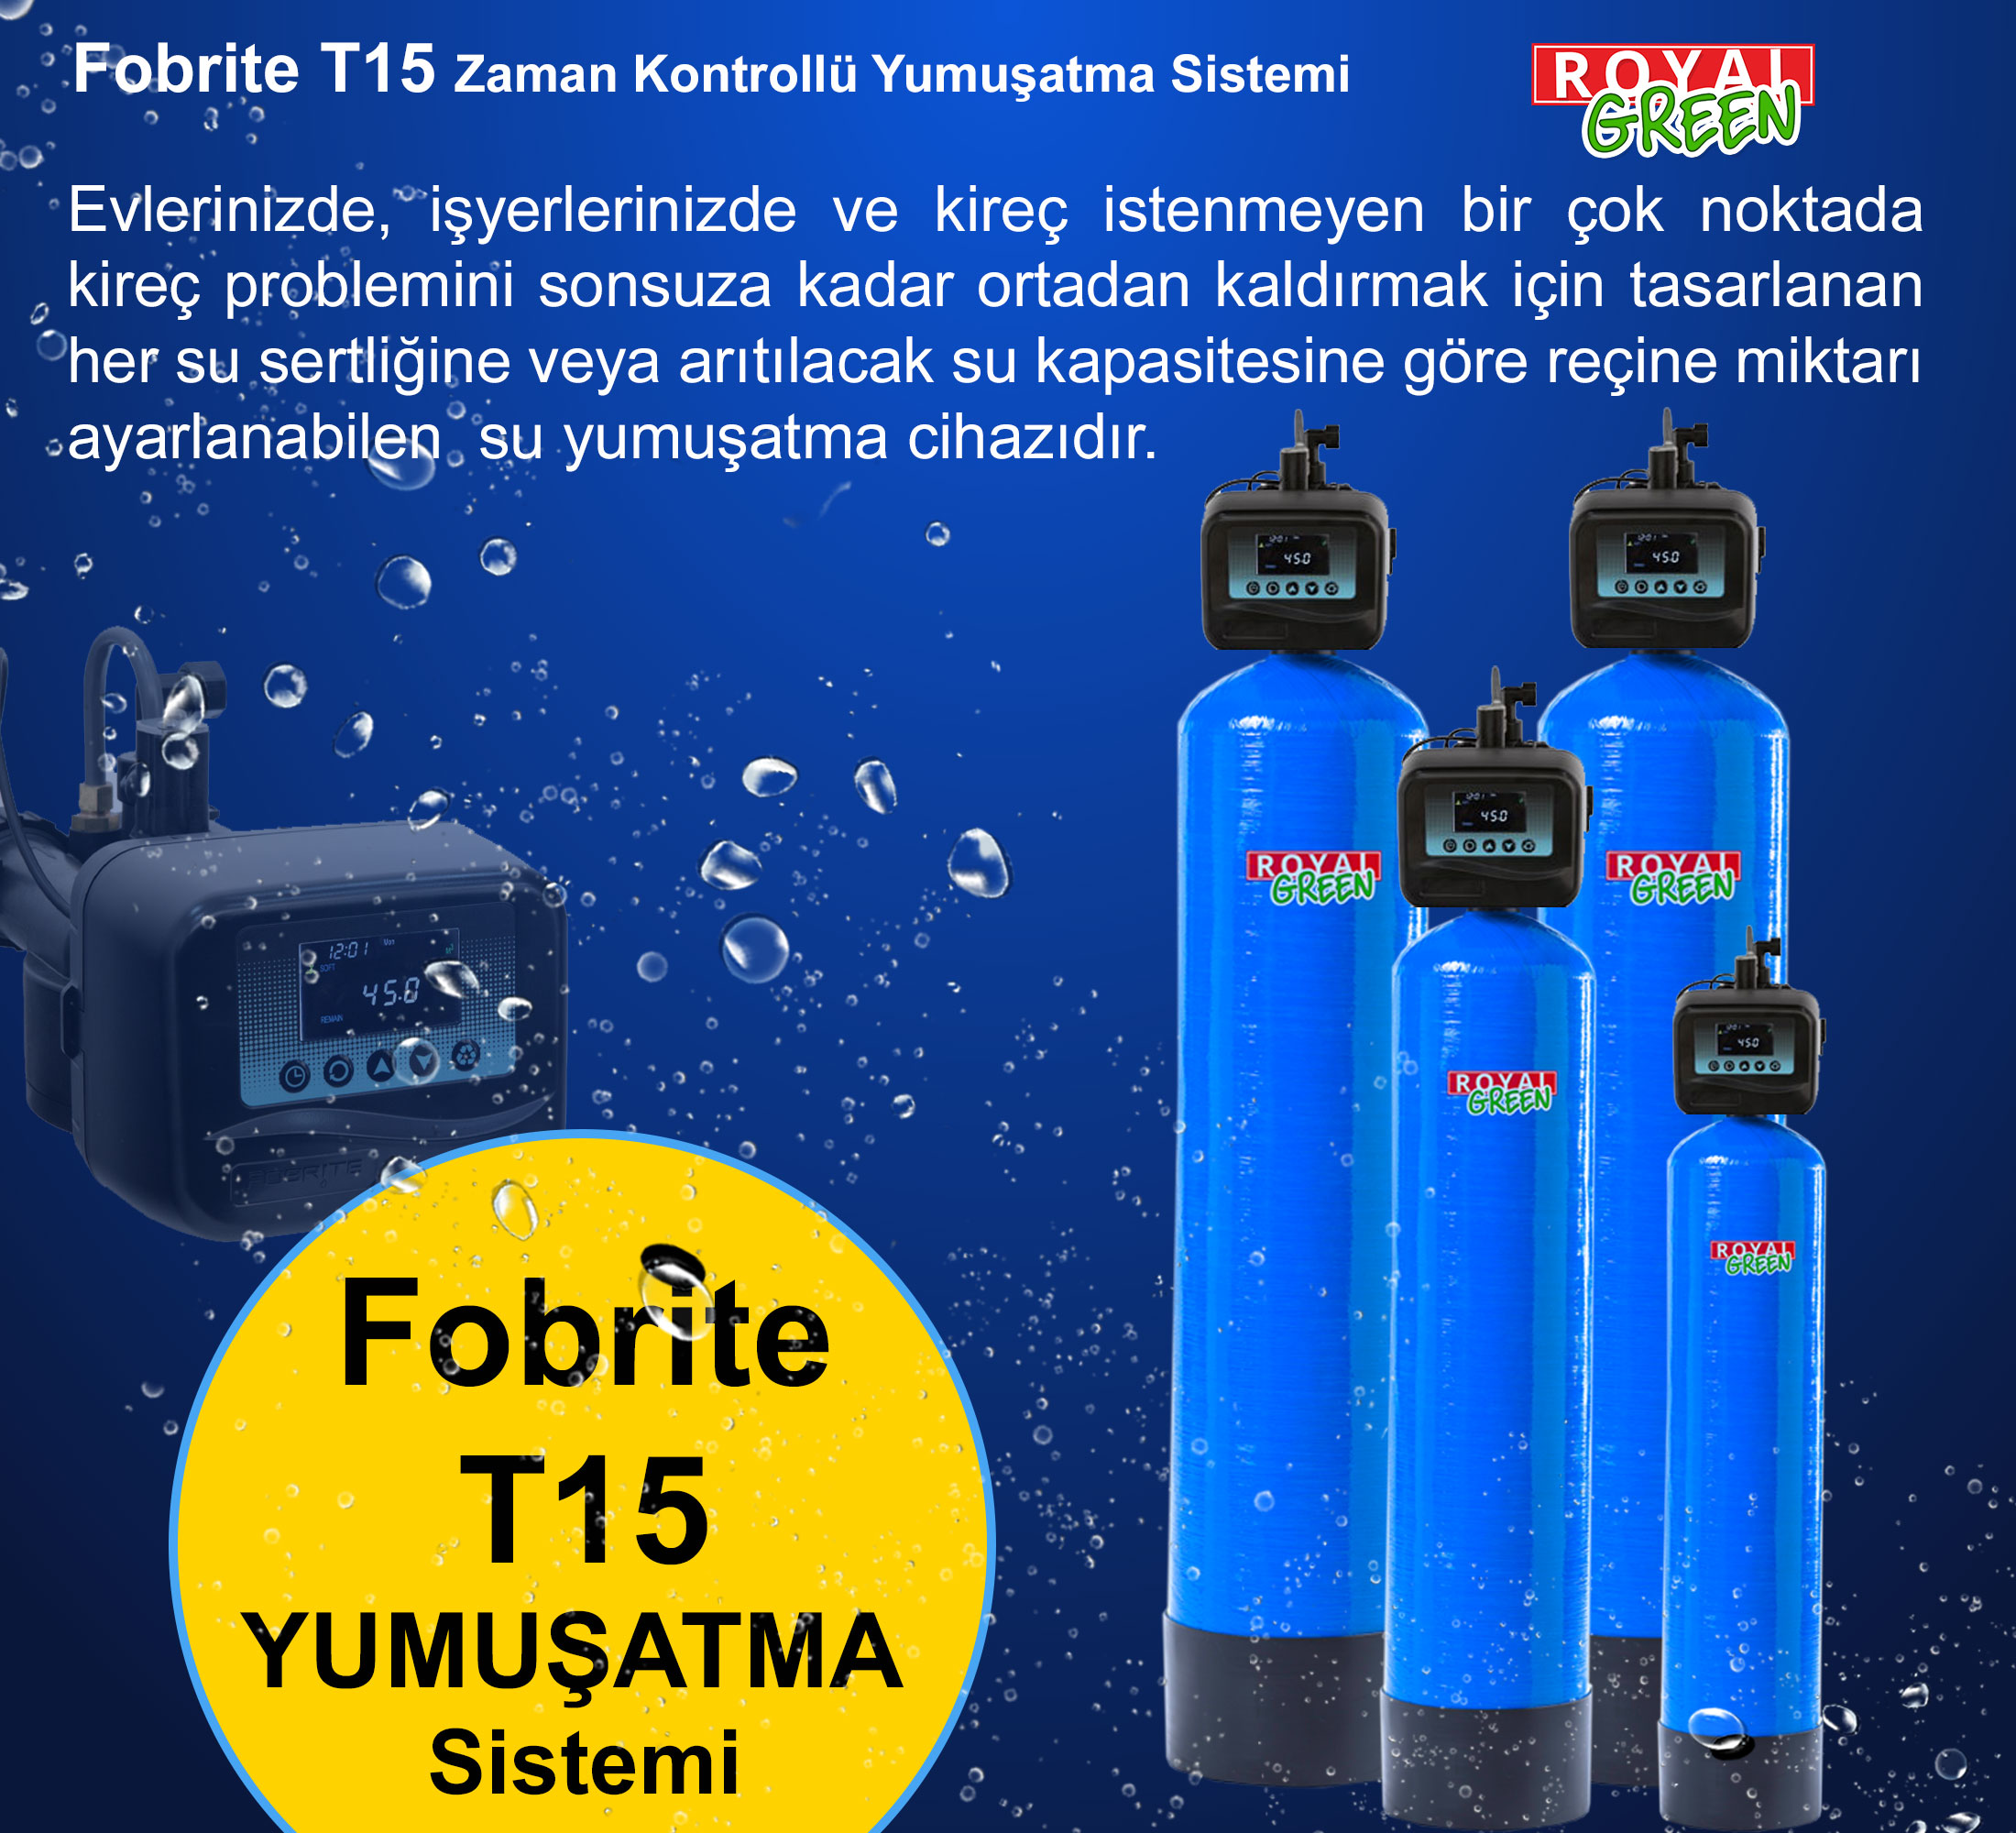 Fobrite T15 yumusatma sistemi banner